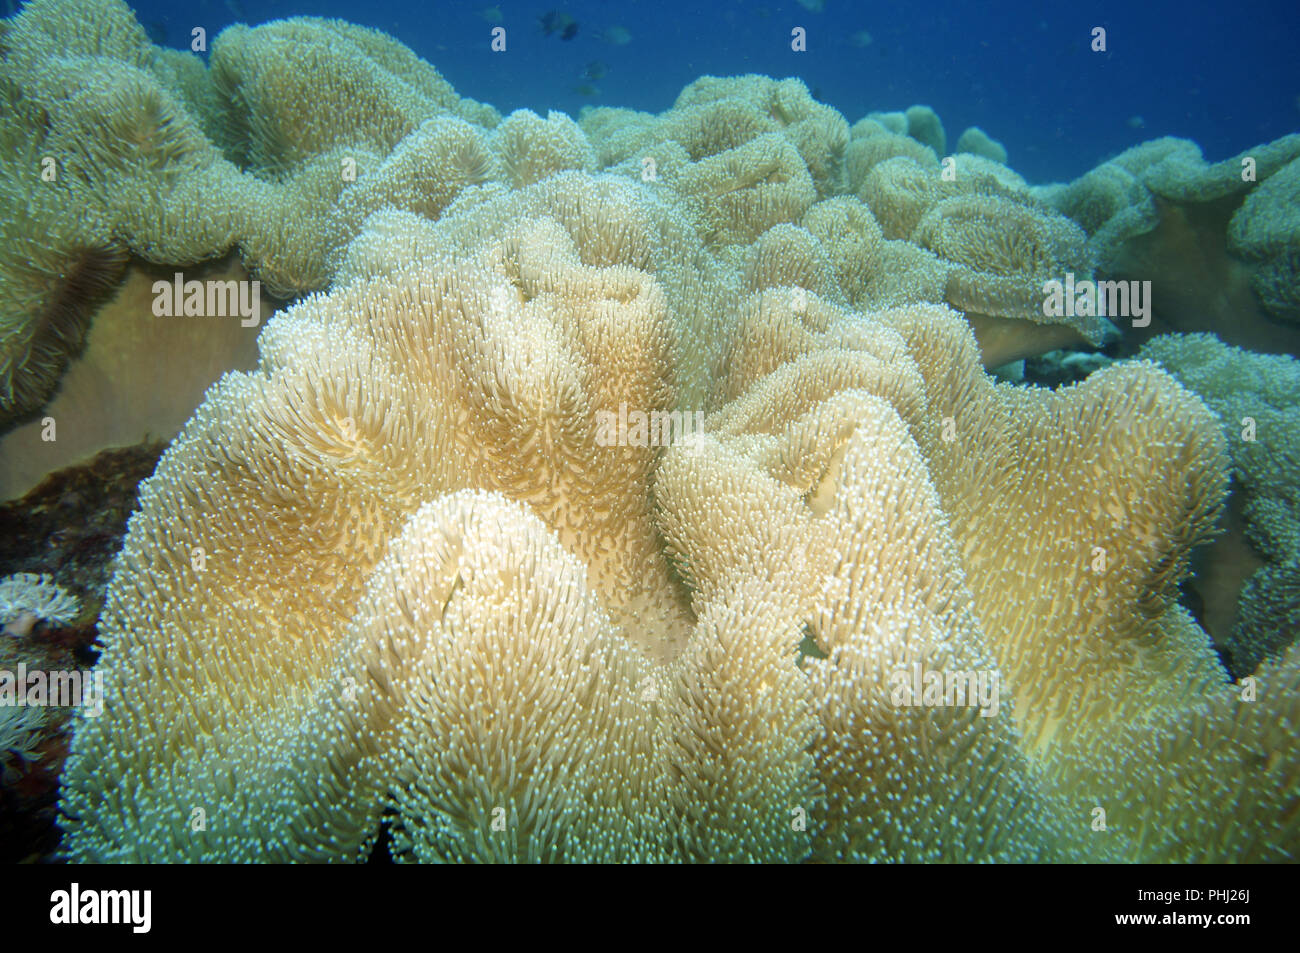 Giant anemone Stock Photo